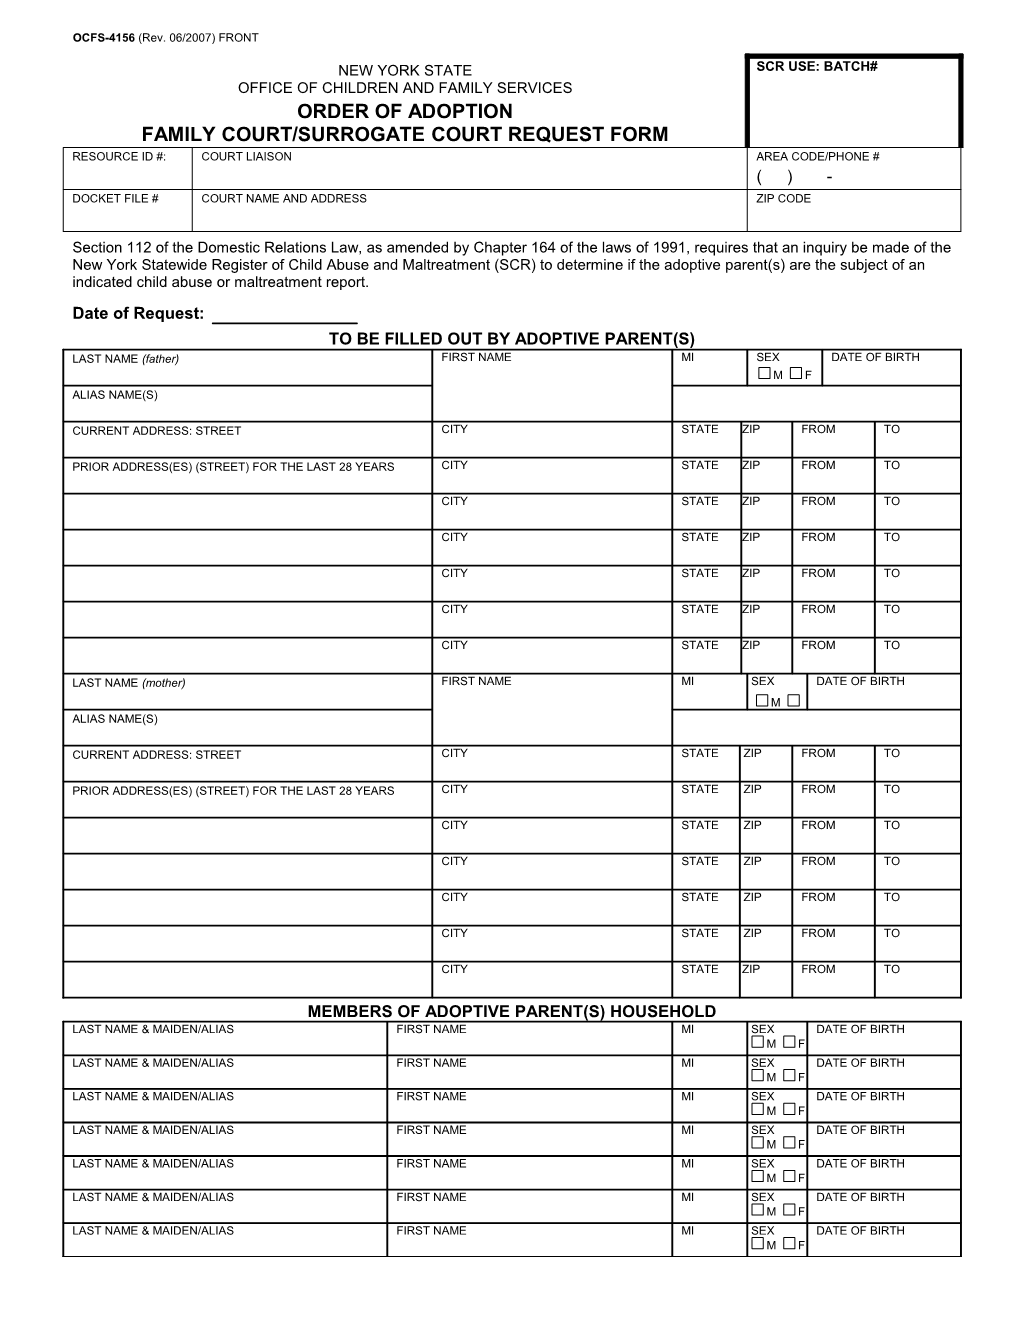 Family Court/Surrogate Court Request Form